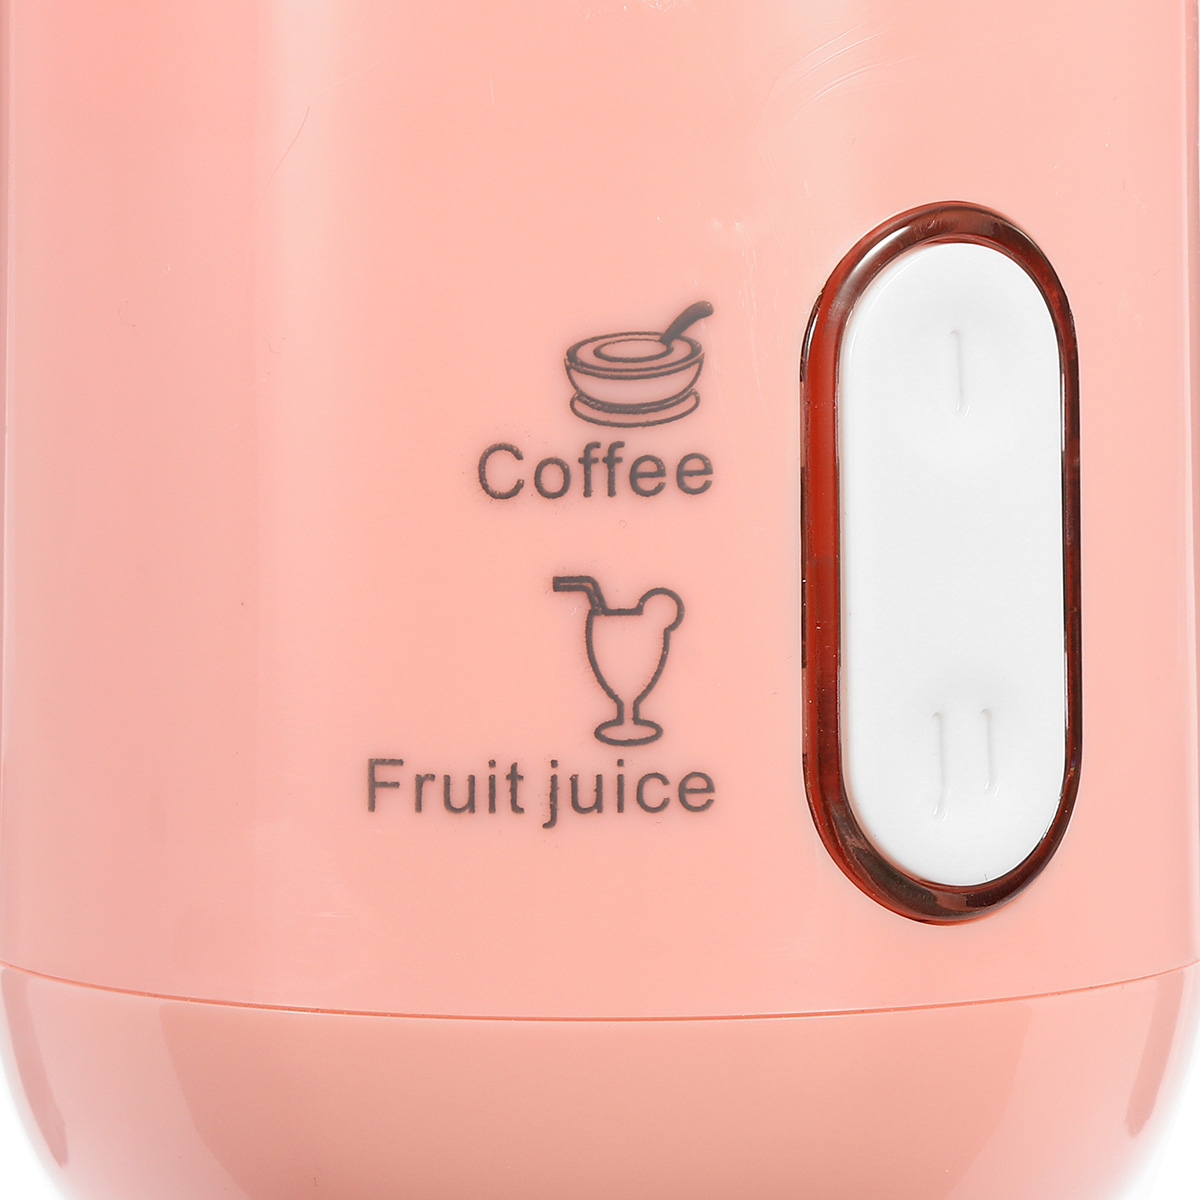 400ml USB Electric Fruit Juicer Smoothie Blender Portable Travel Coffee Maker Bottle Juice Cup 20